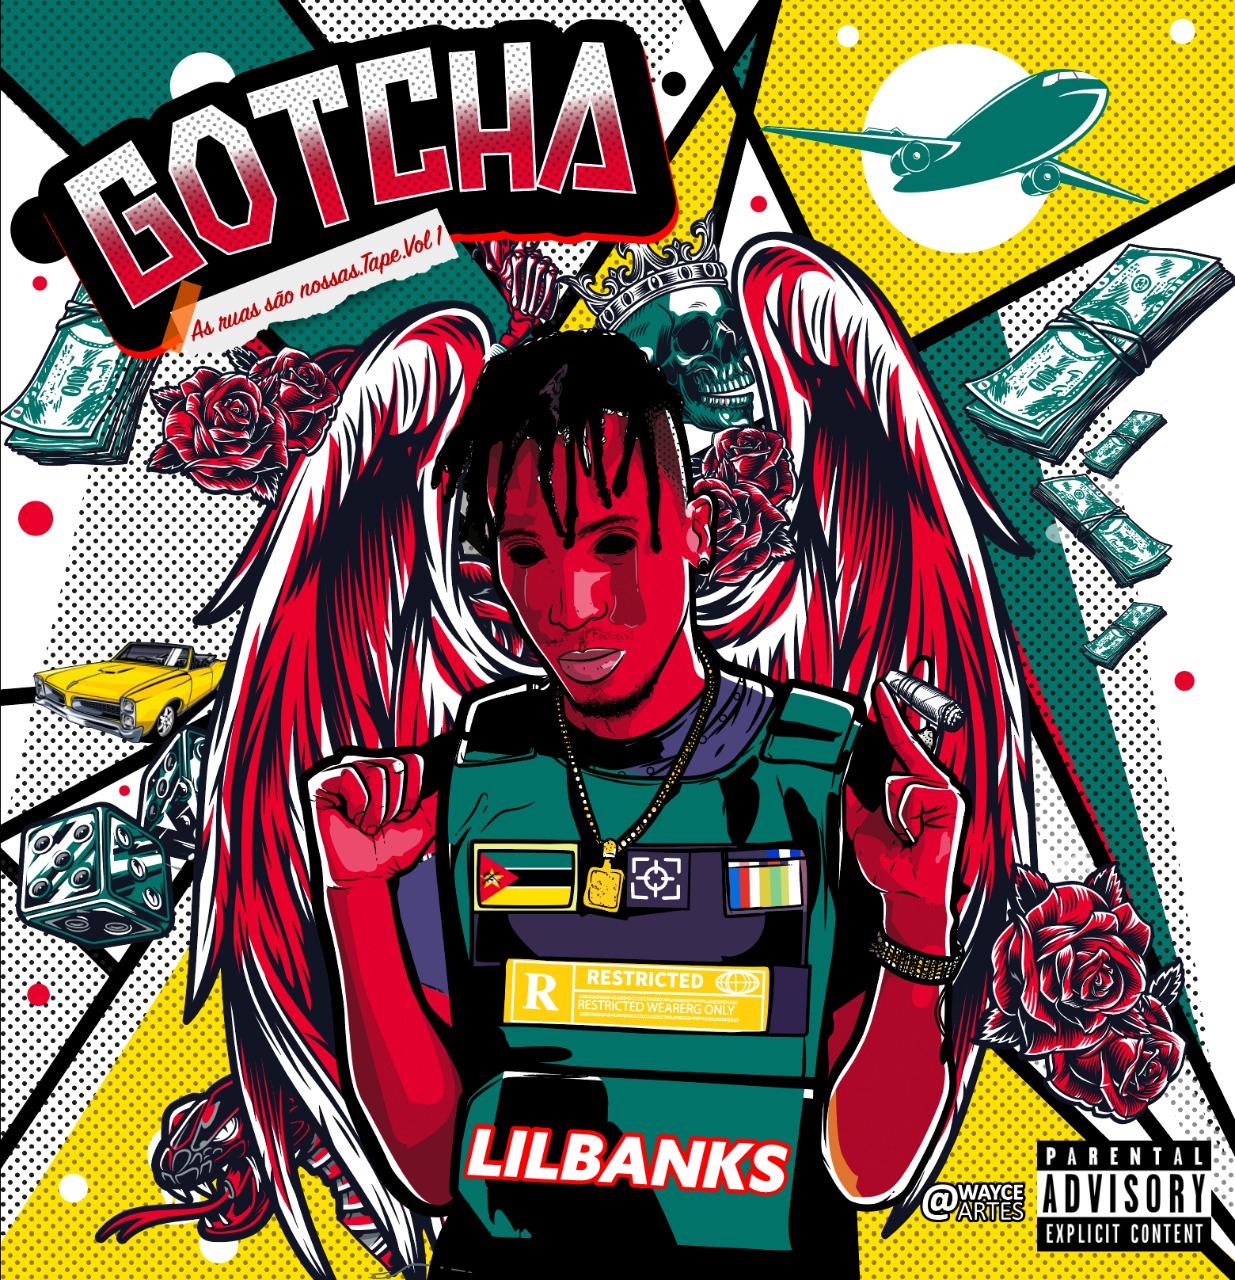 LilBanks – Gotcha (As Ruas Sao Nossas) Vol.1 (MixTape)